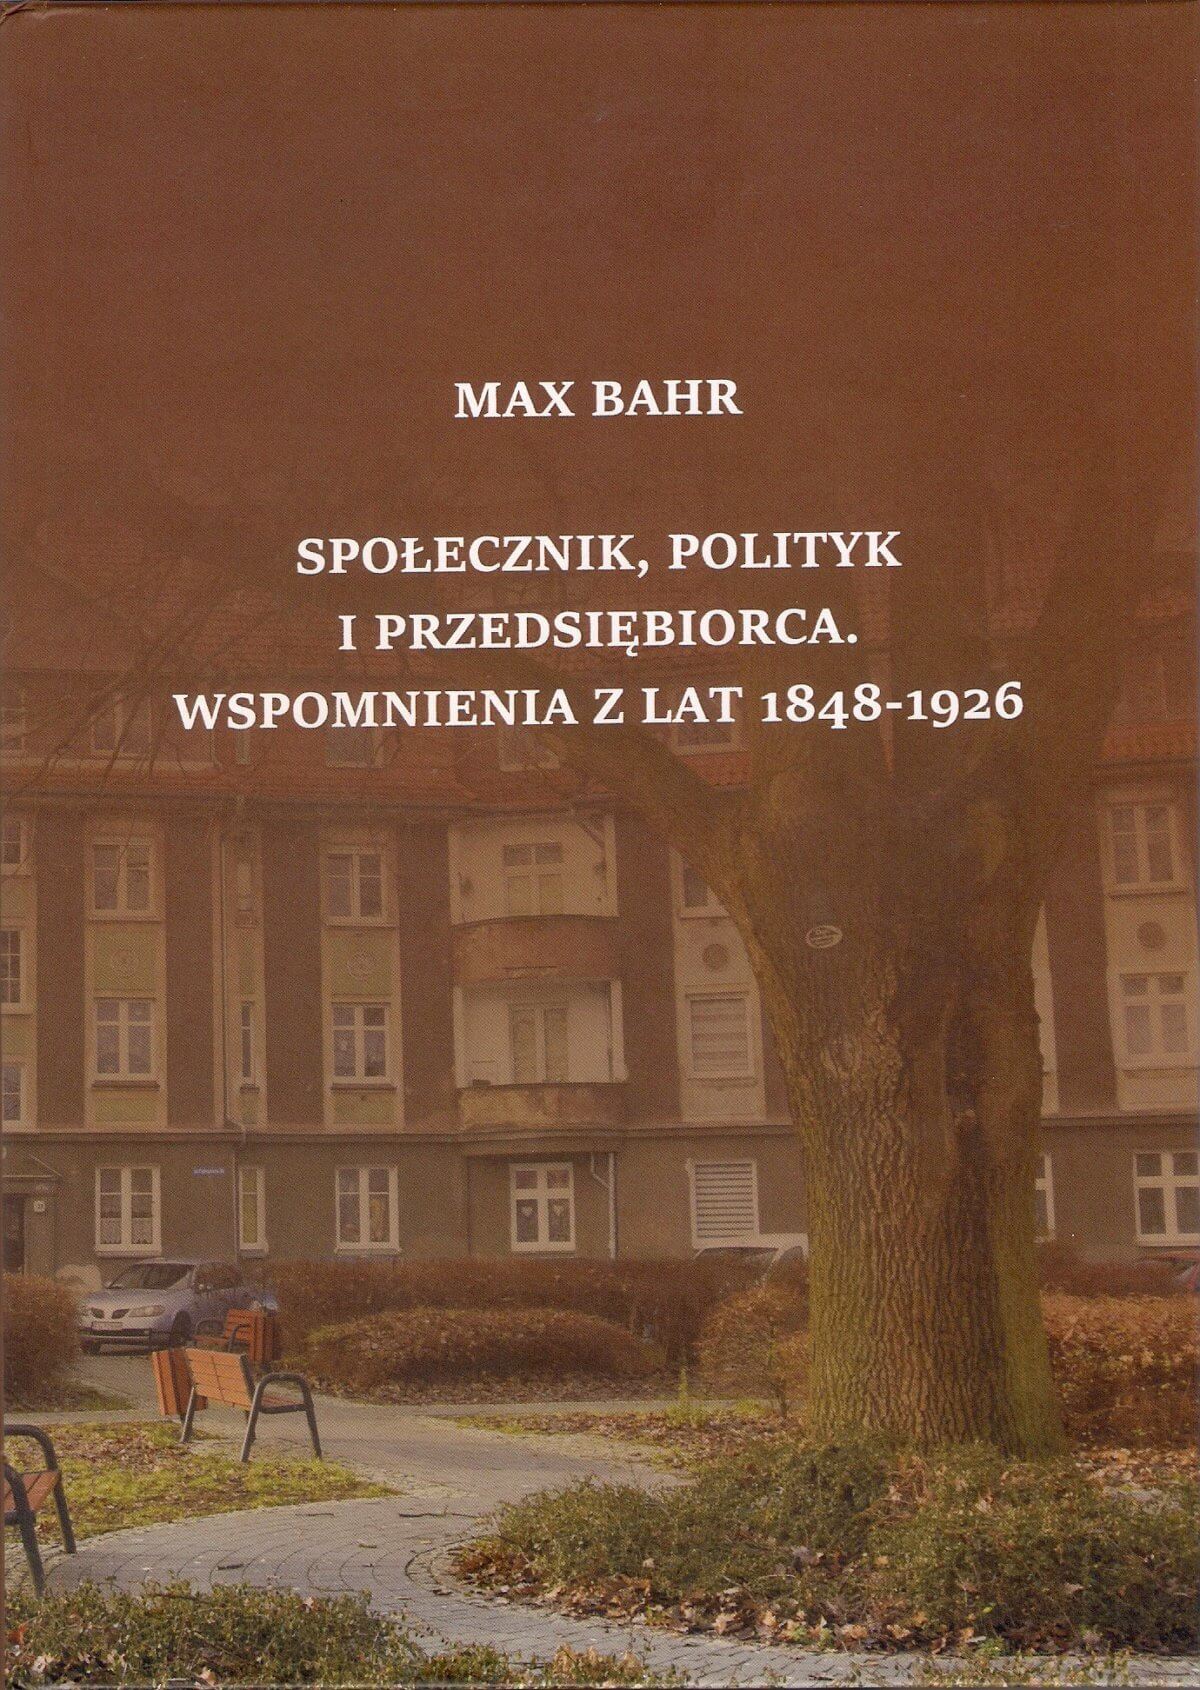 Miał 78 lat, gdy w 1926 r. ukazała się jego książka pt. „Praca pewnego niemieckiego obywatela na polu gospodarki i polityki. Wspomnienia i doświadczenia z lat 1949-1926” (oczywiście po niemiecku). Dopiero teraz przetłumaczyła ją na język polski dr Małgorzata Czabańska-Rosada, a wydała Wojewódzka i Miejska Biblioteka Publiczna im. Zbigniewa Herberta. Promocja książki odbyła się 30 stycznia 2010 r. z okazji Dnia Pamięci i Pojednania.